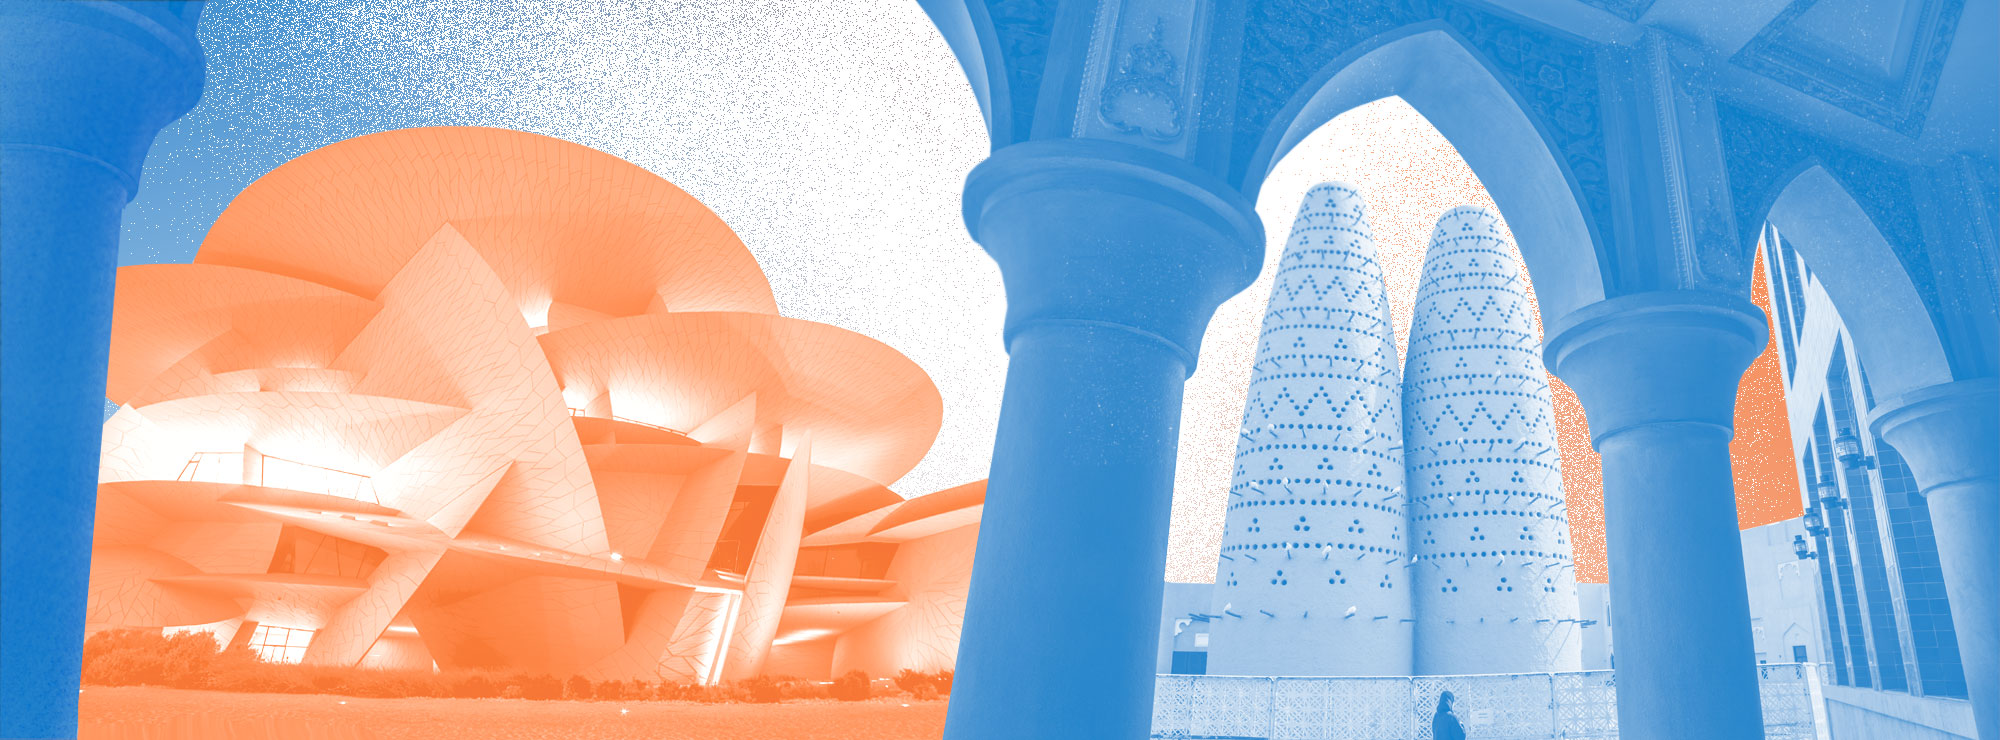 Полноразмерная обложка поста на тему: 5 причин посетить Катар